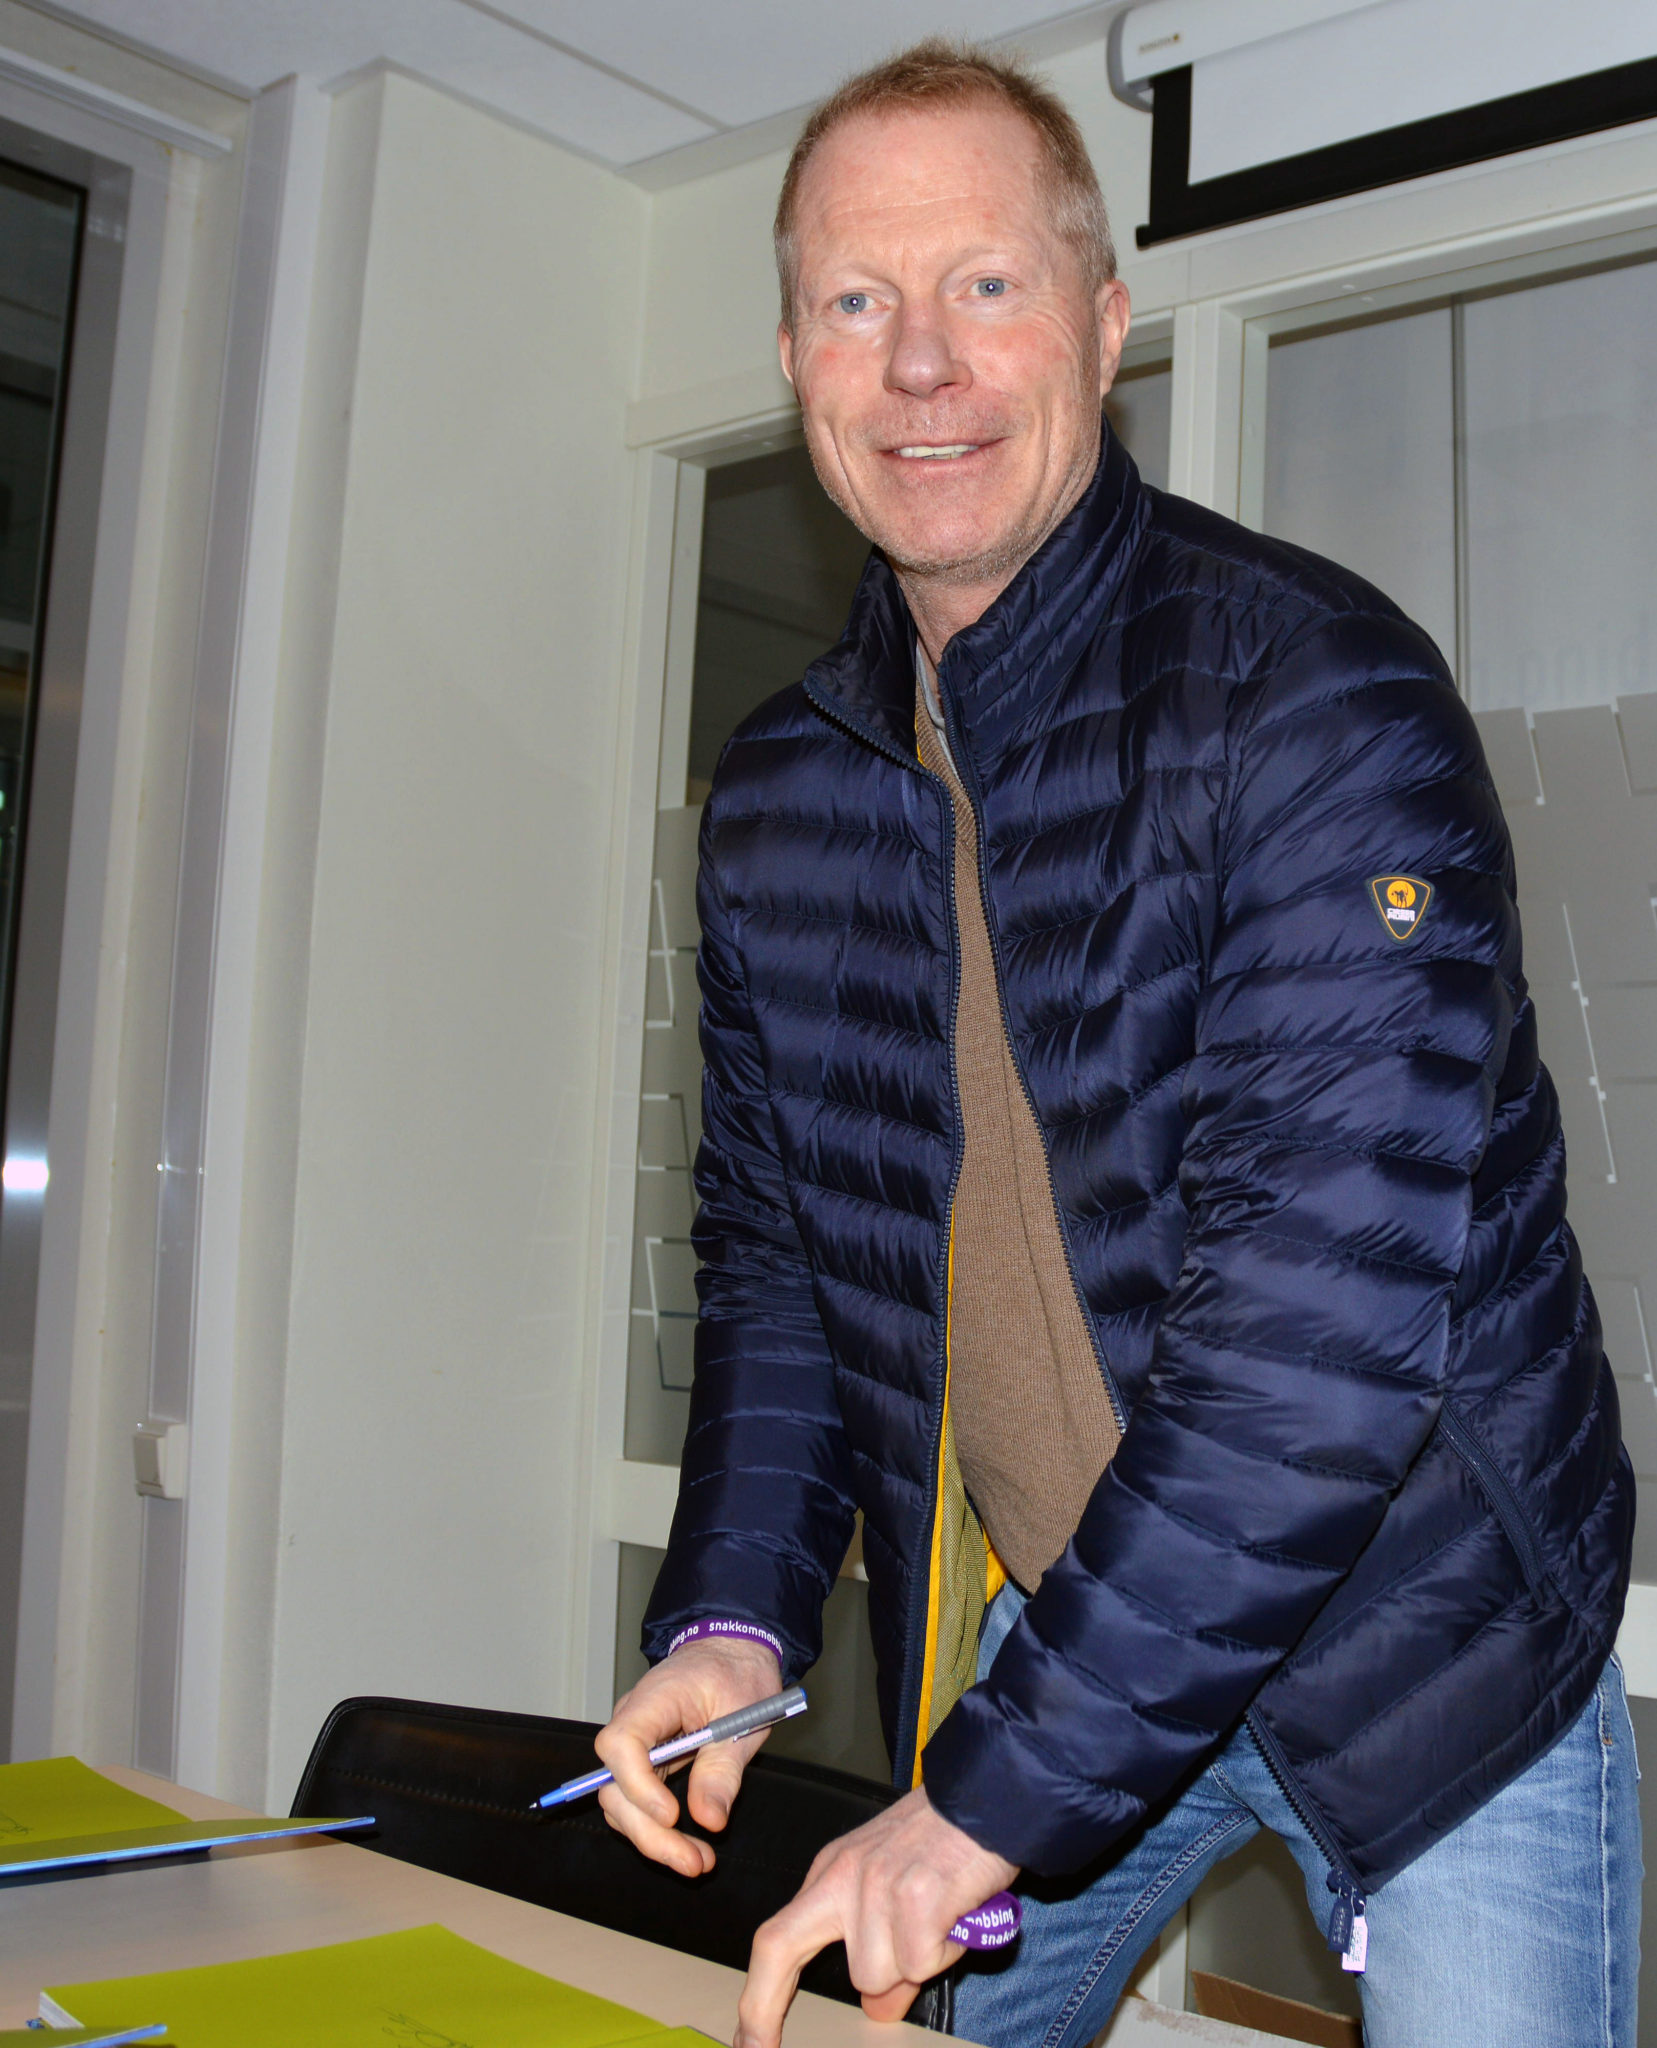 Samtlige deltakere signerte flere eksemplarer av den nye kokeboken som Barnas Stasjon har utviklet i samarbeid med den kjente mesterkokken Trond Moi, her er Roy Johansen fra Vålerenga IF i gang med signeringen.